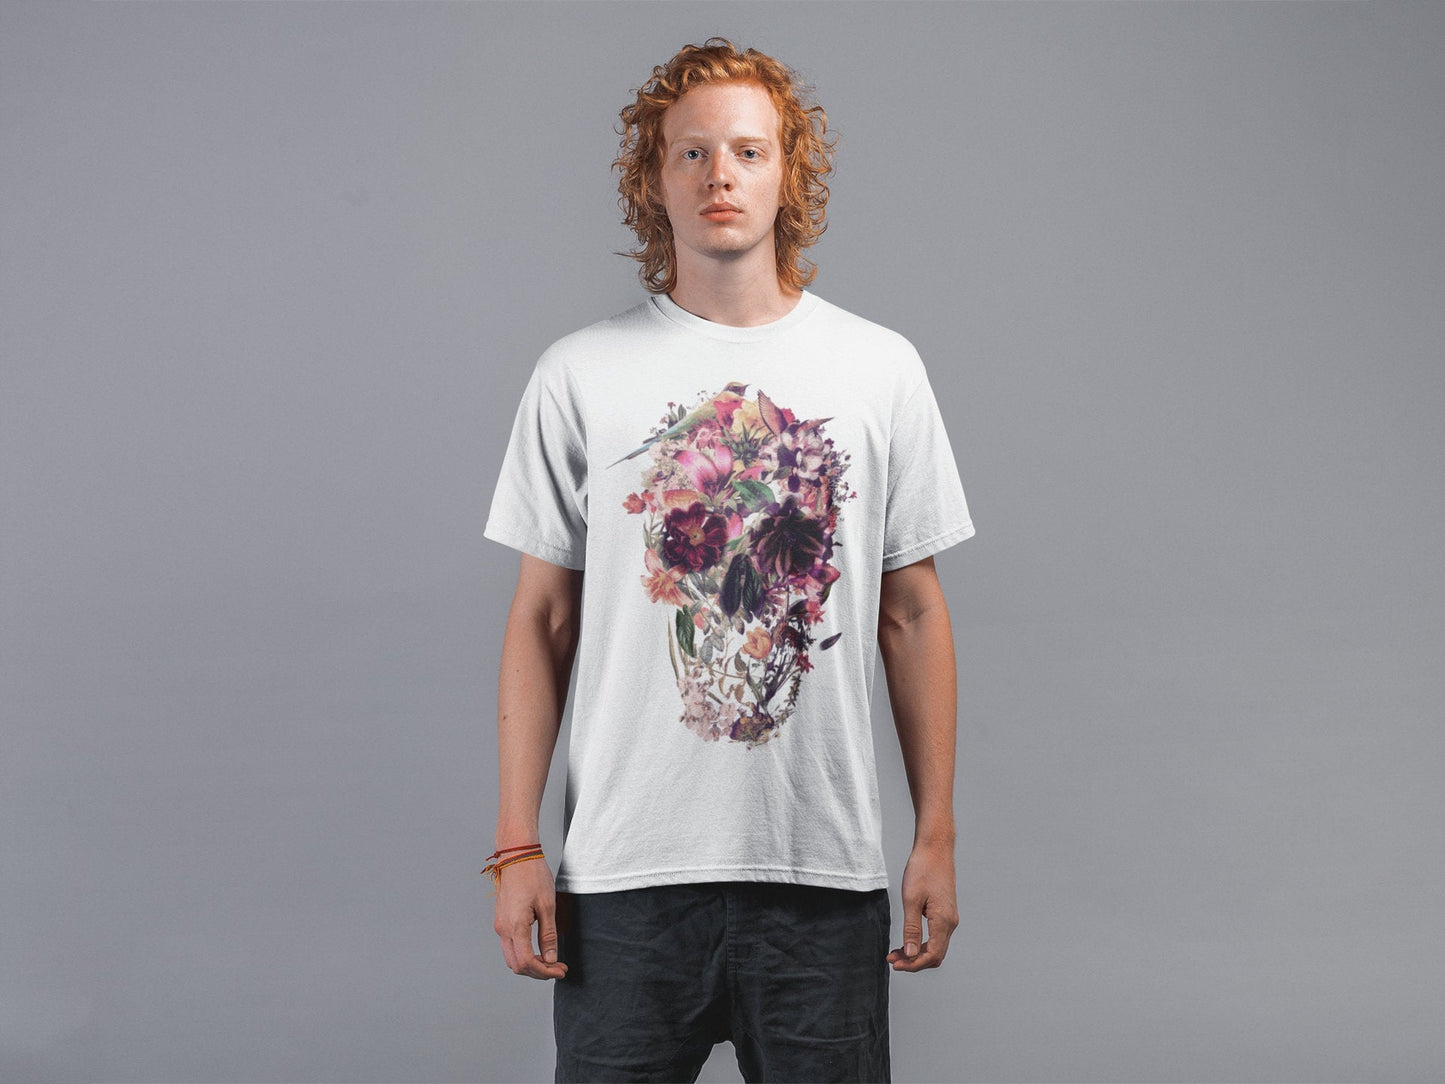 Skull Men's T-shirt, Sugar Skull Art Mens T Shirt, New Skull Art Print Gift For Him